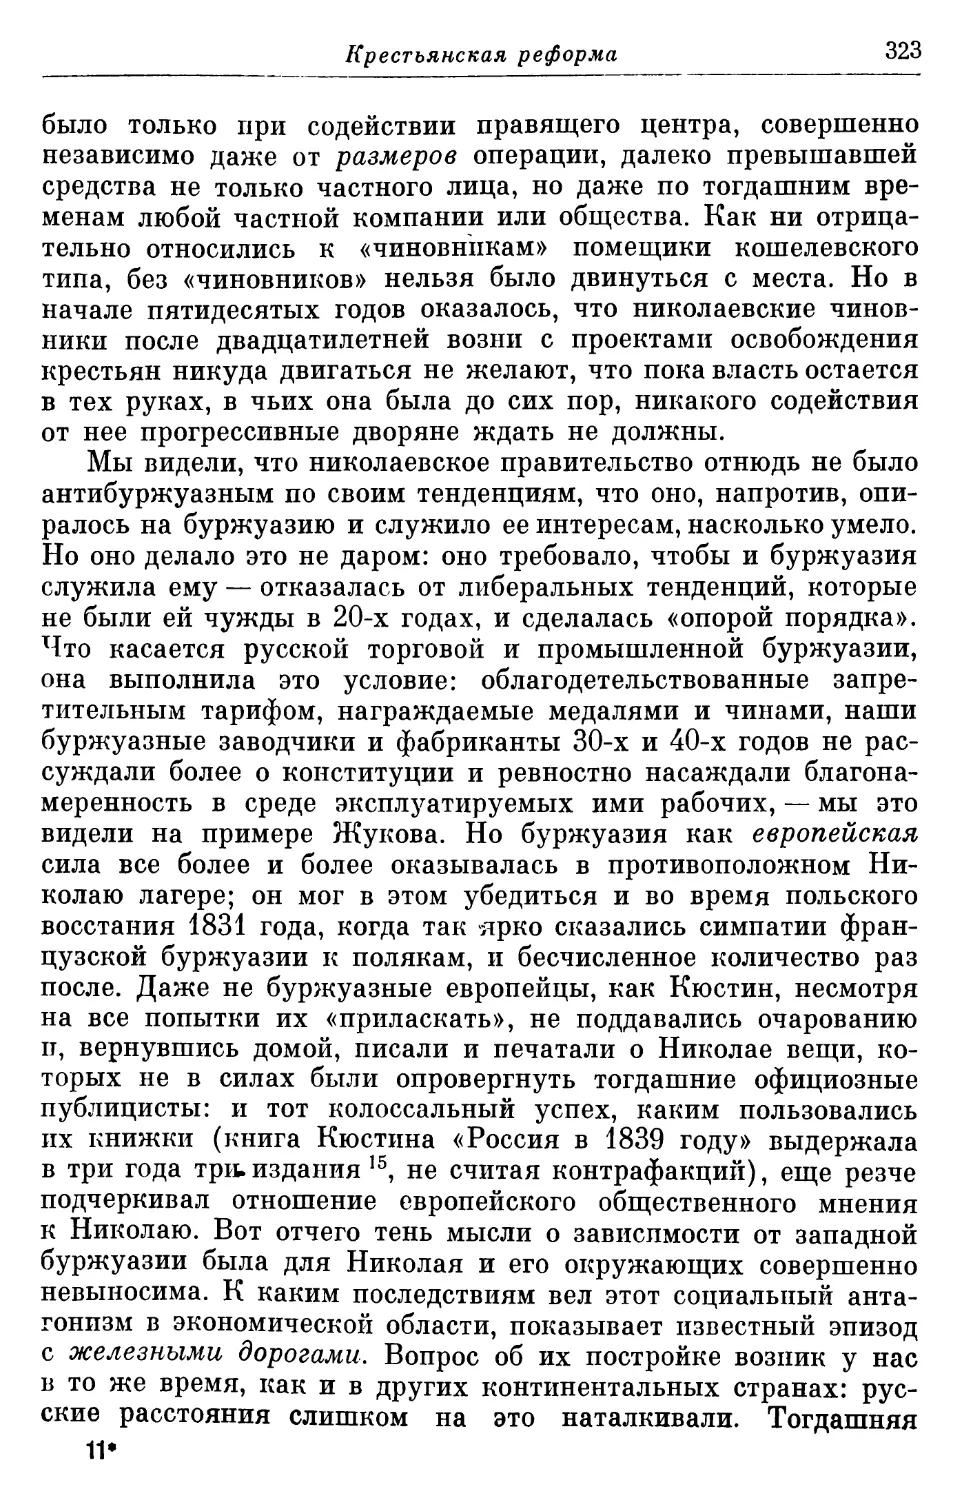 Позиция «знати»; русское правительство и европейская буржуазия; вопрос о железных дорогах; 1848 год и Крымская война